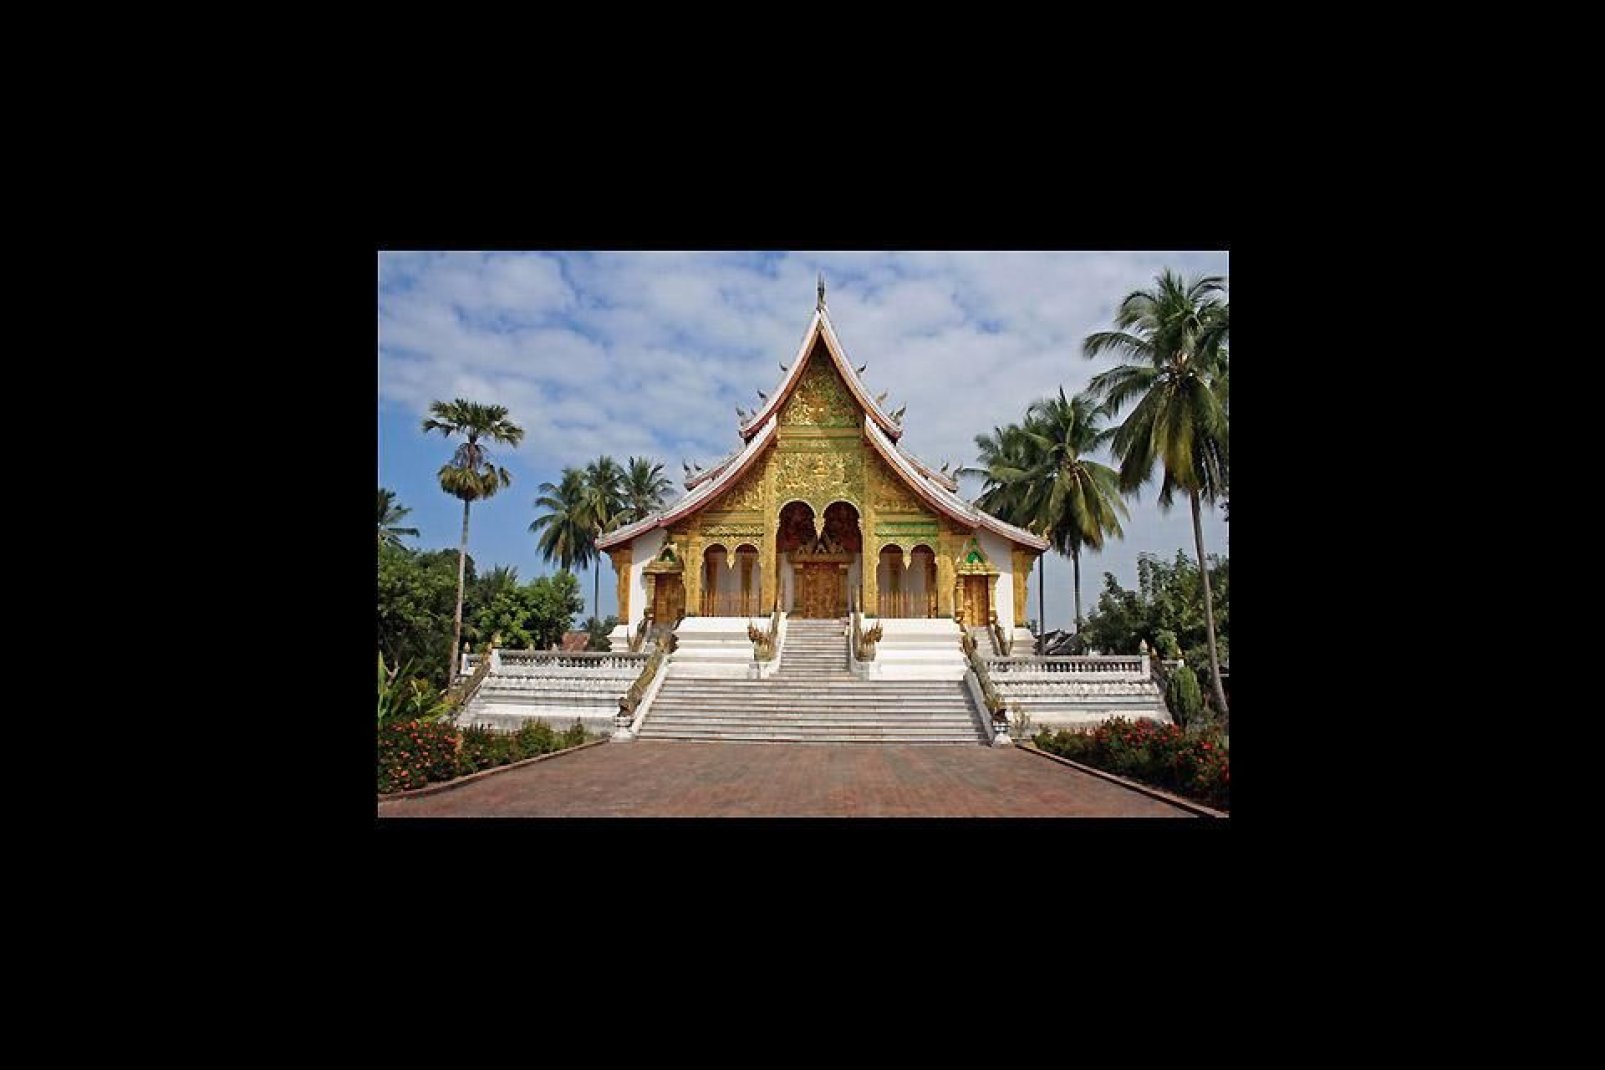 Der buddhistische Tempel von Wat Xieng Thong zählt sicherlich zu den schönsten Monumenten von Luang Prabang. Zudem wurde die Stadt von der UNESCO ins Weltkulturerbe aufgenommen.